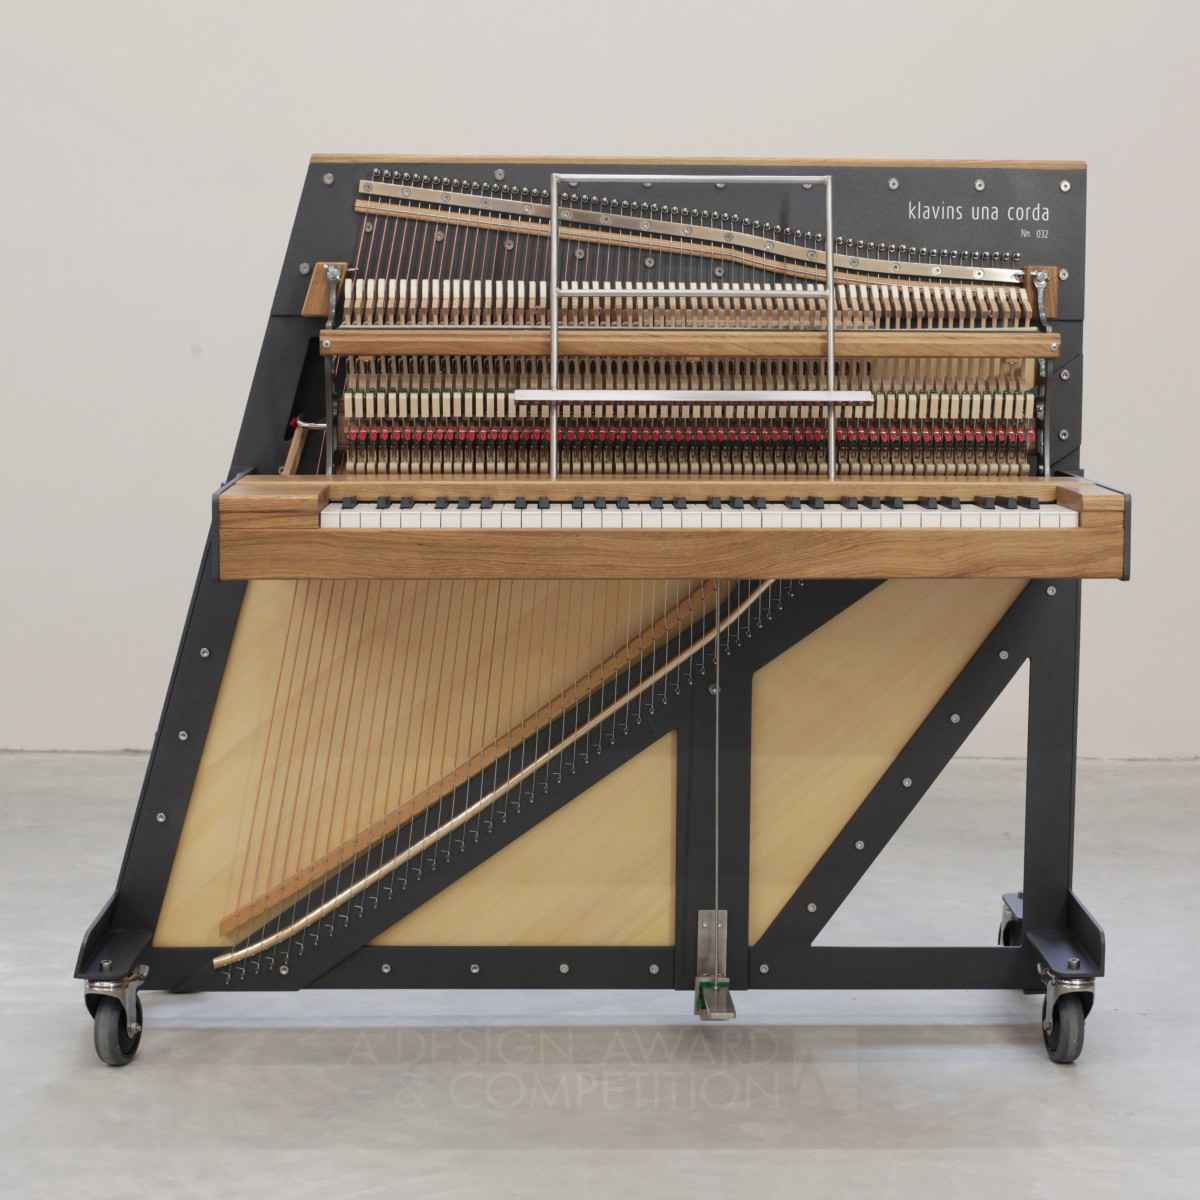 Una Corda Acoustic Piano by Klavins Piano